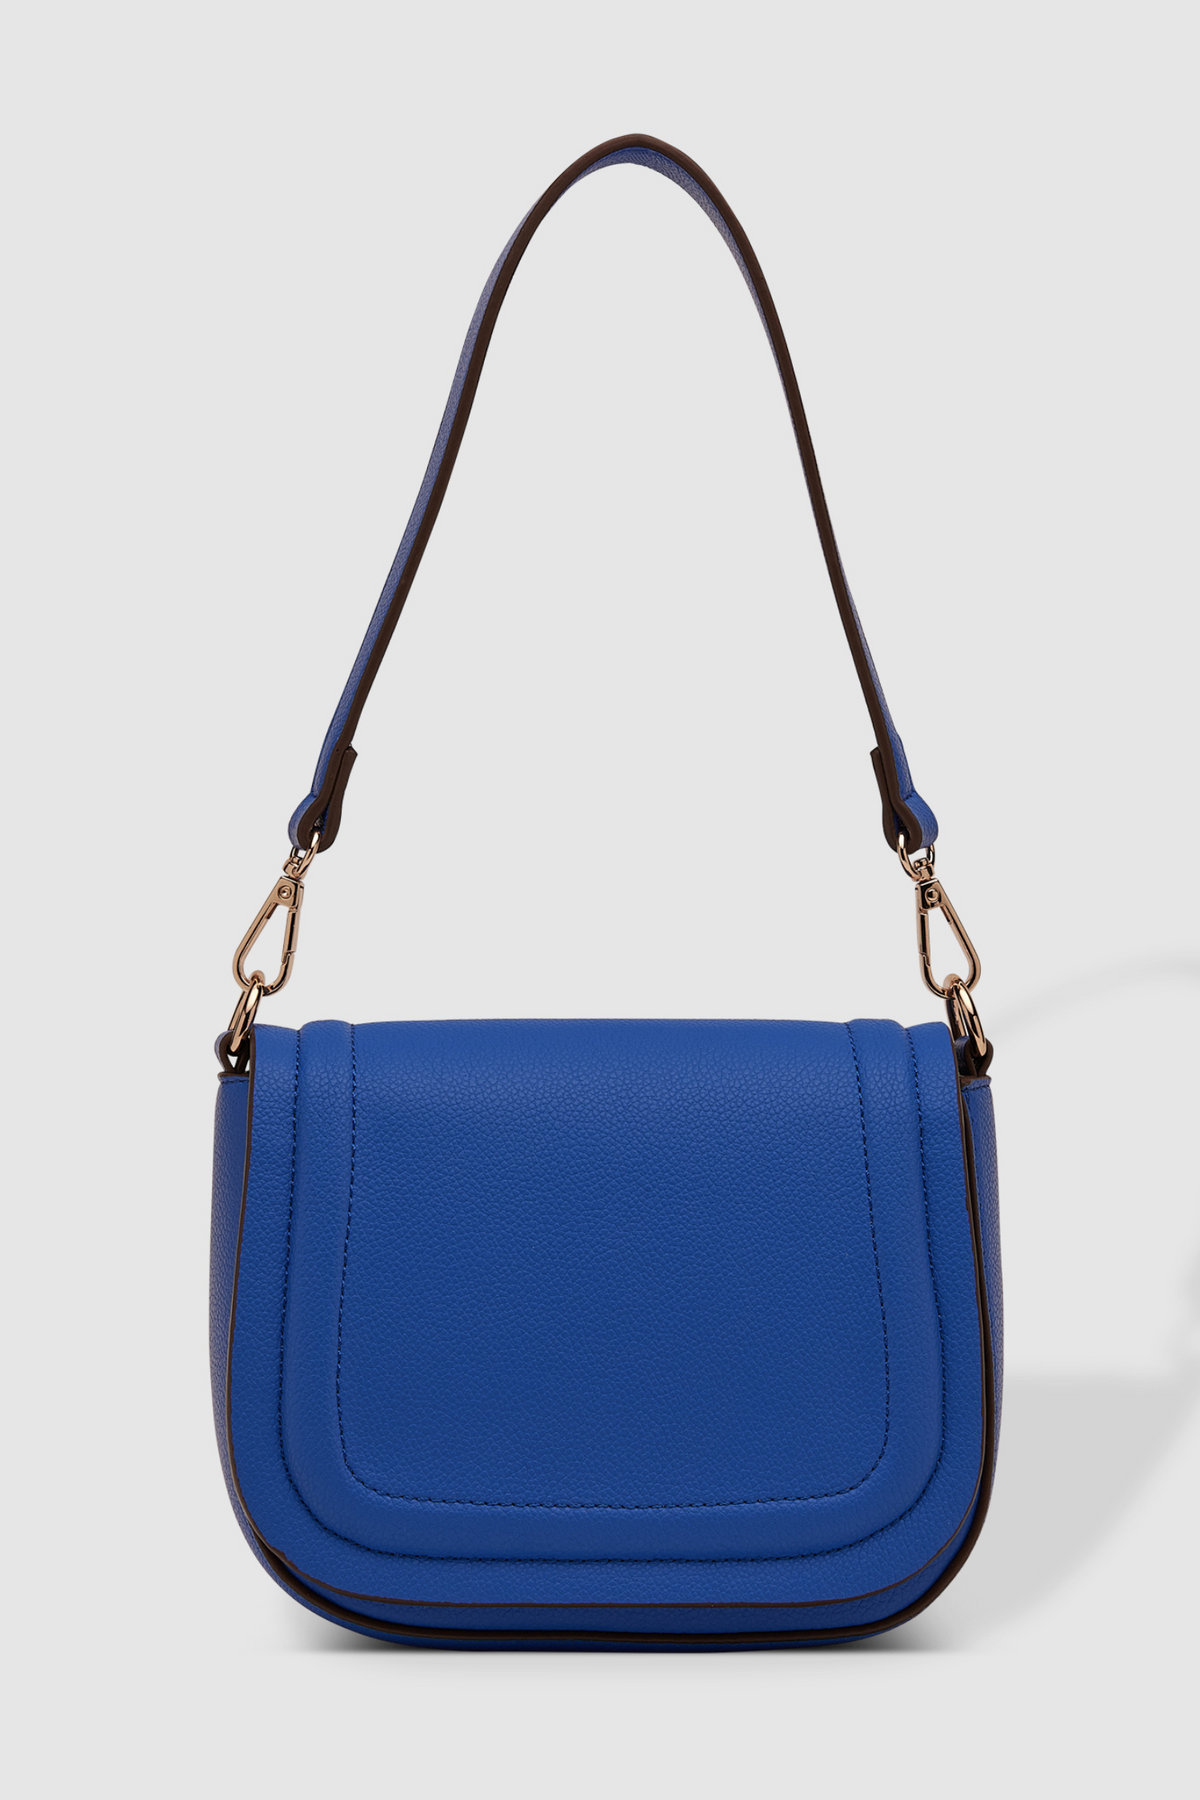 Louenhied Sydney Shoulder Bag - Style 3820